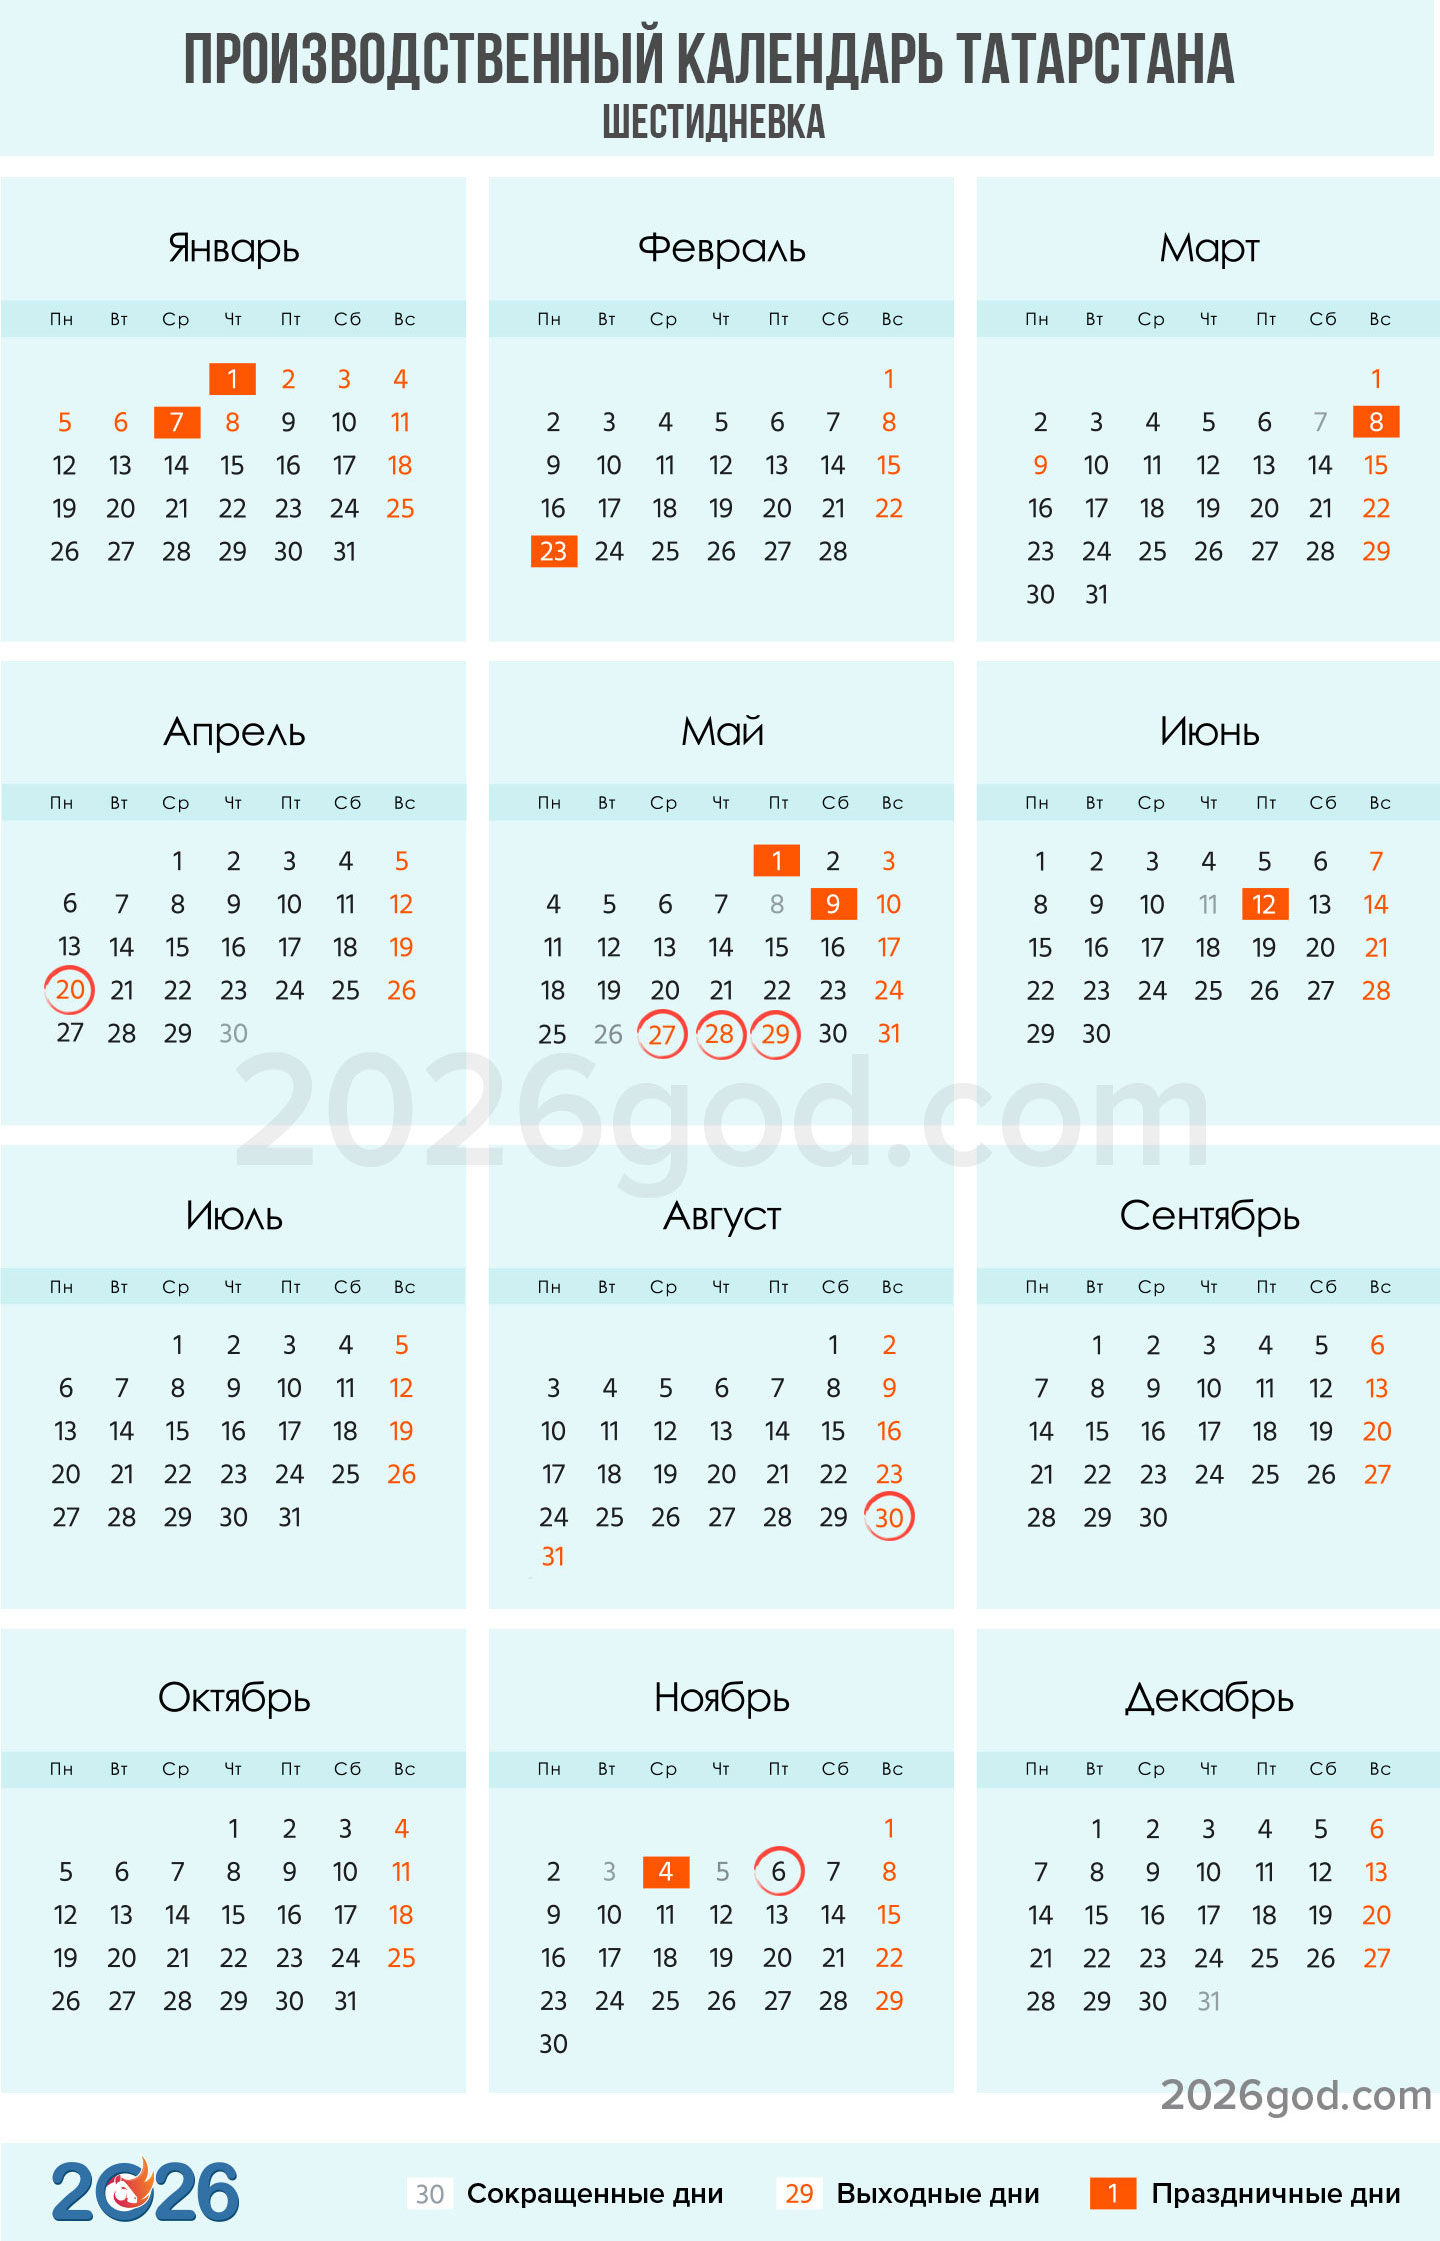 Производственный календарь Татарстана на 2026 год для шестидневки